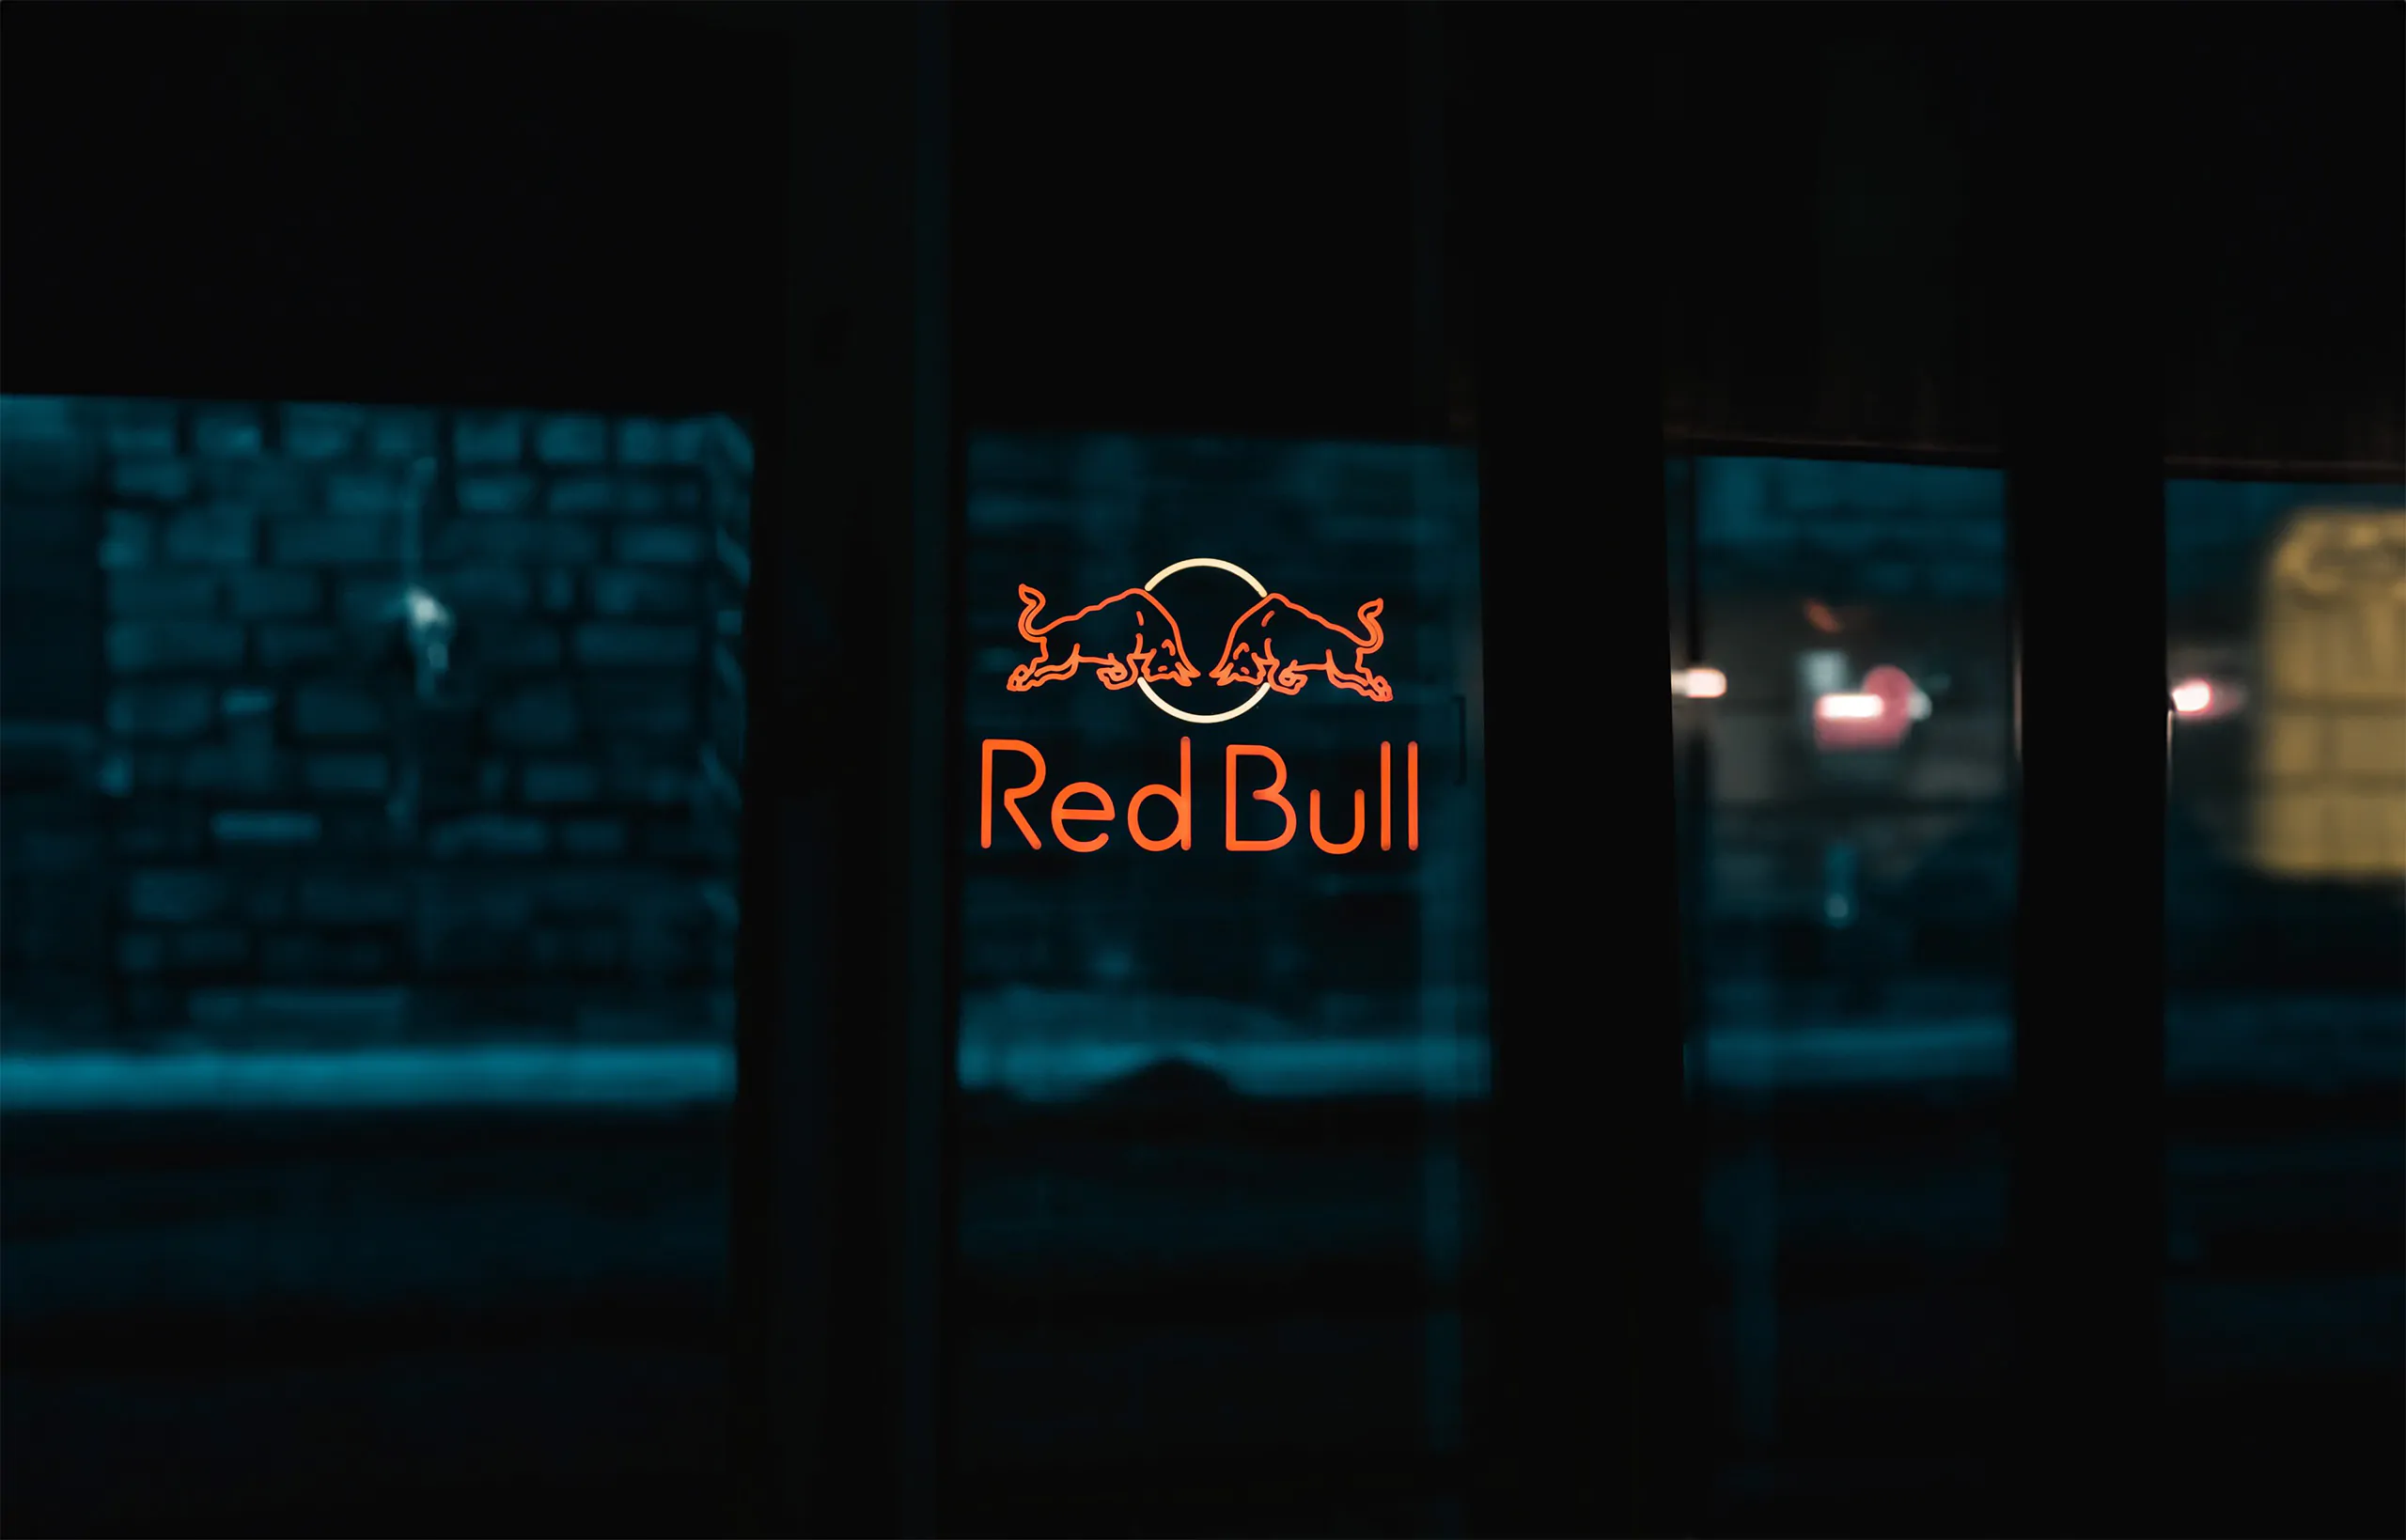 Le logo d'un taureau rouge sur une fenêtre la nuit, éclairé par une agence de marketing.